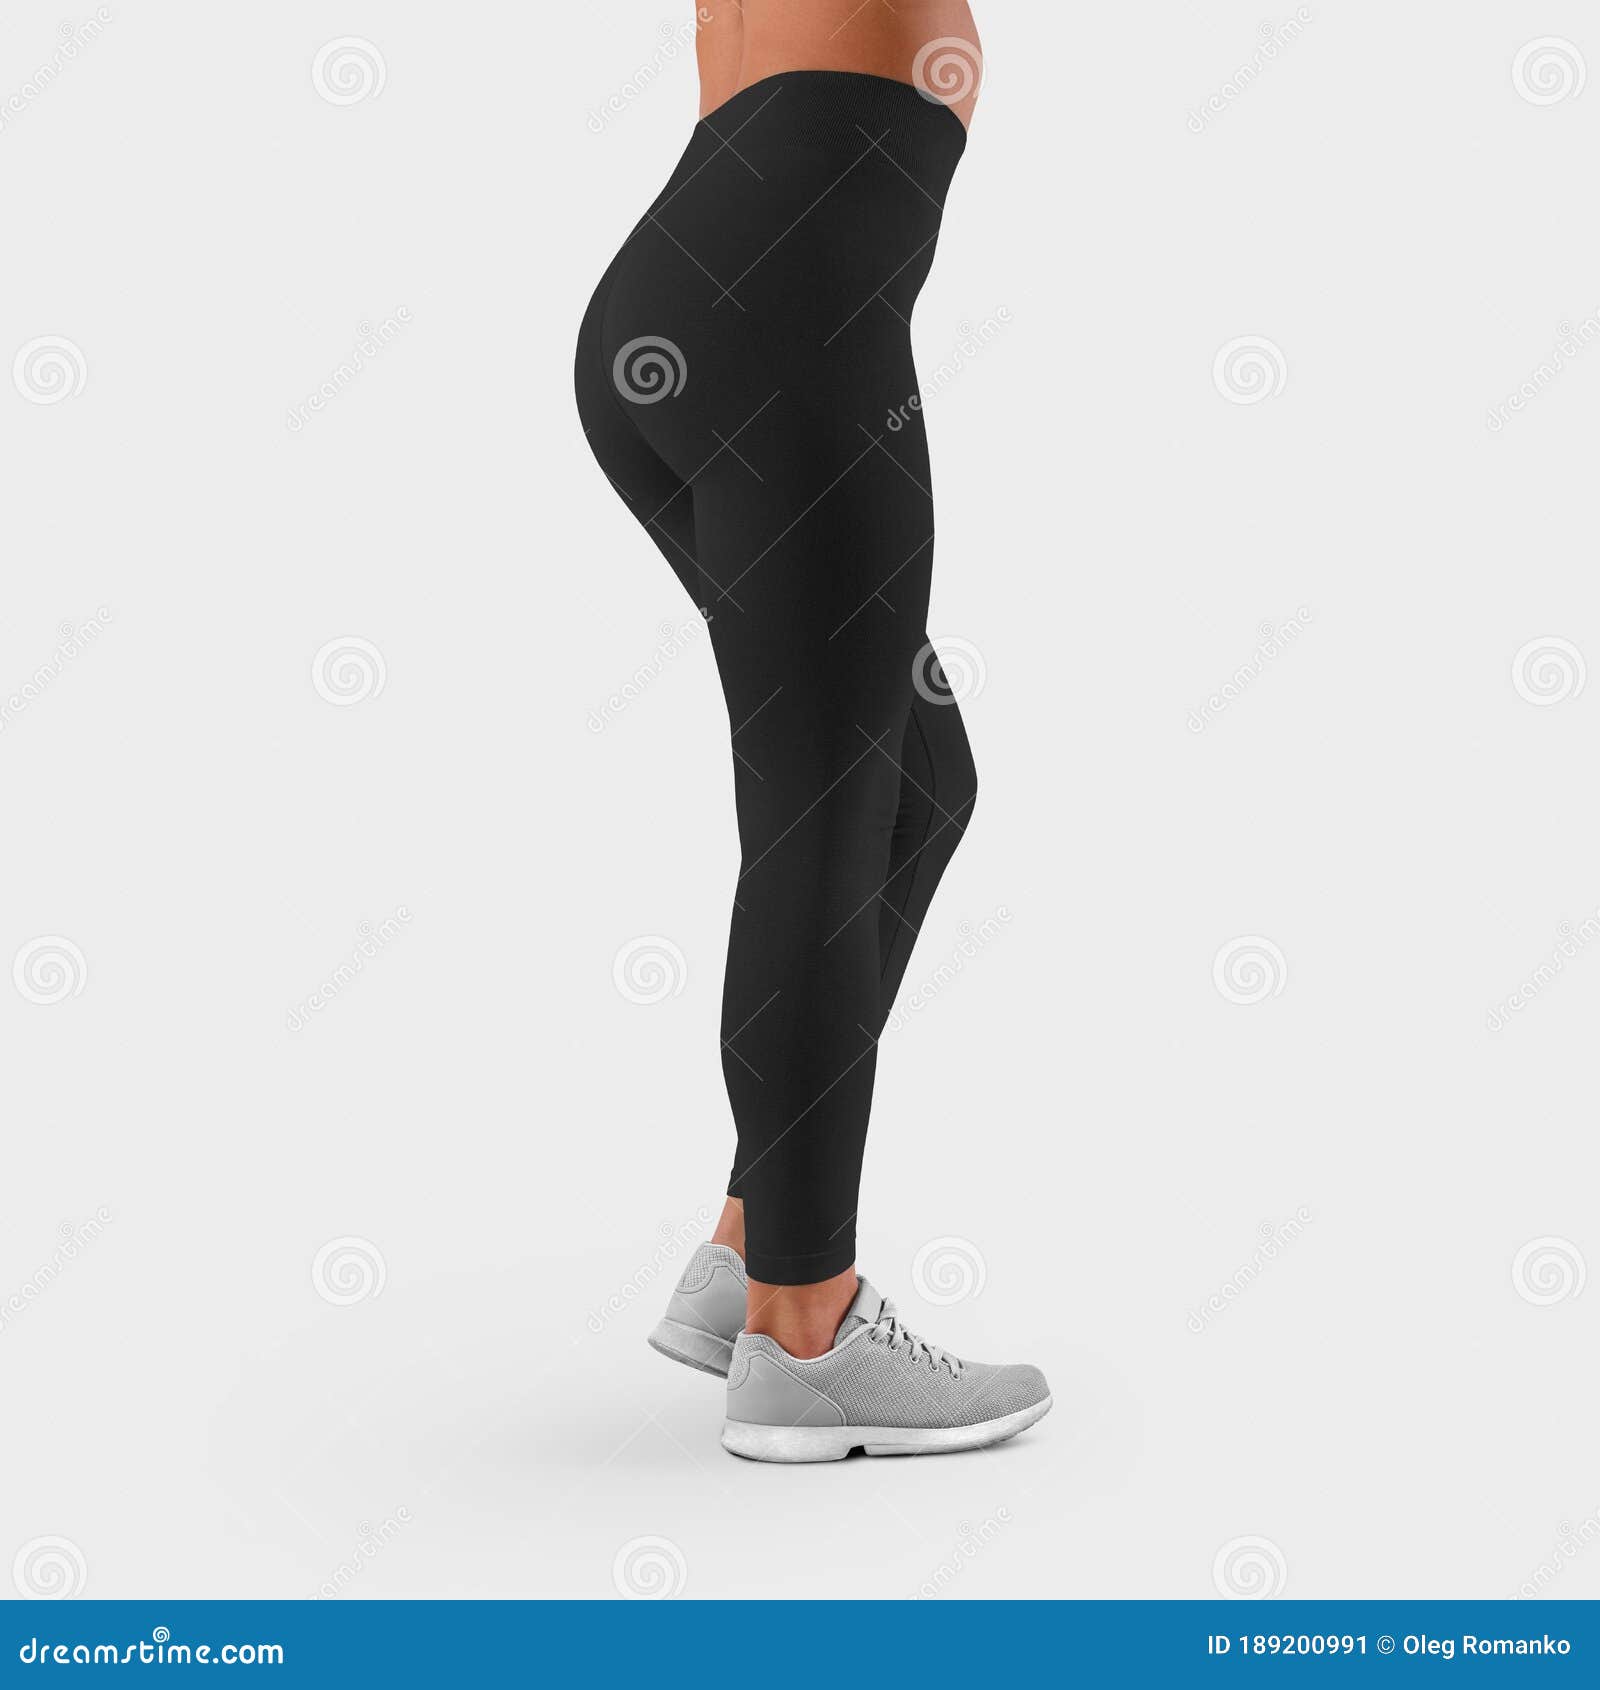 Mockup of Sportswear on Fit Female Legs, Side View, Empty Black